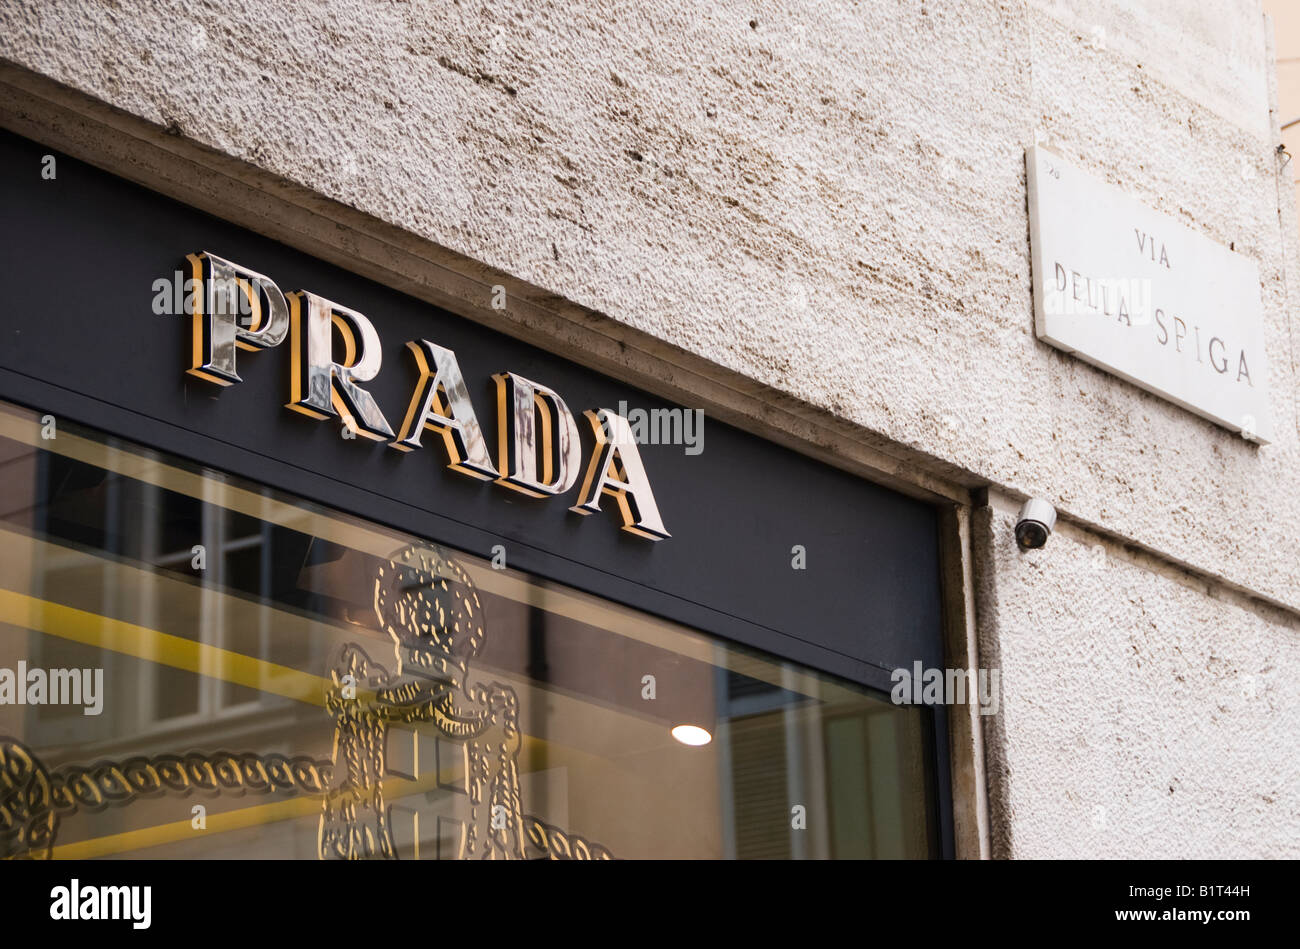 Prada store in Via Della Spiga street in the Fashion area of Milan Stock  Photo - Alamy